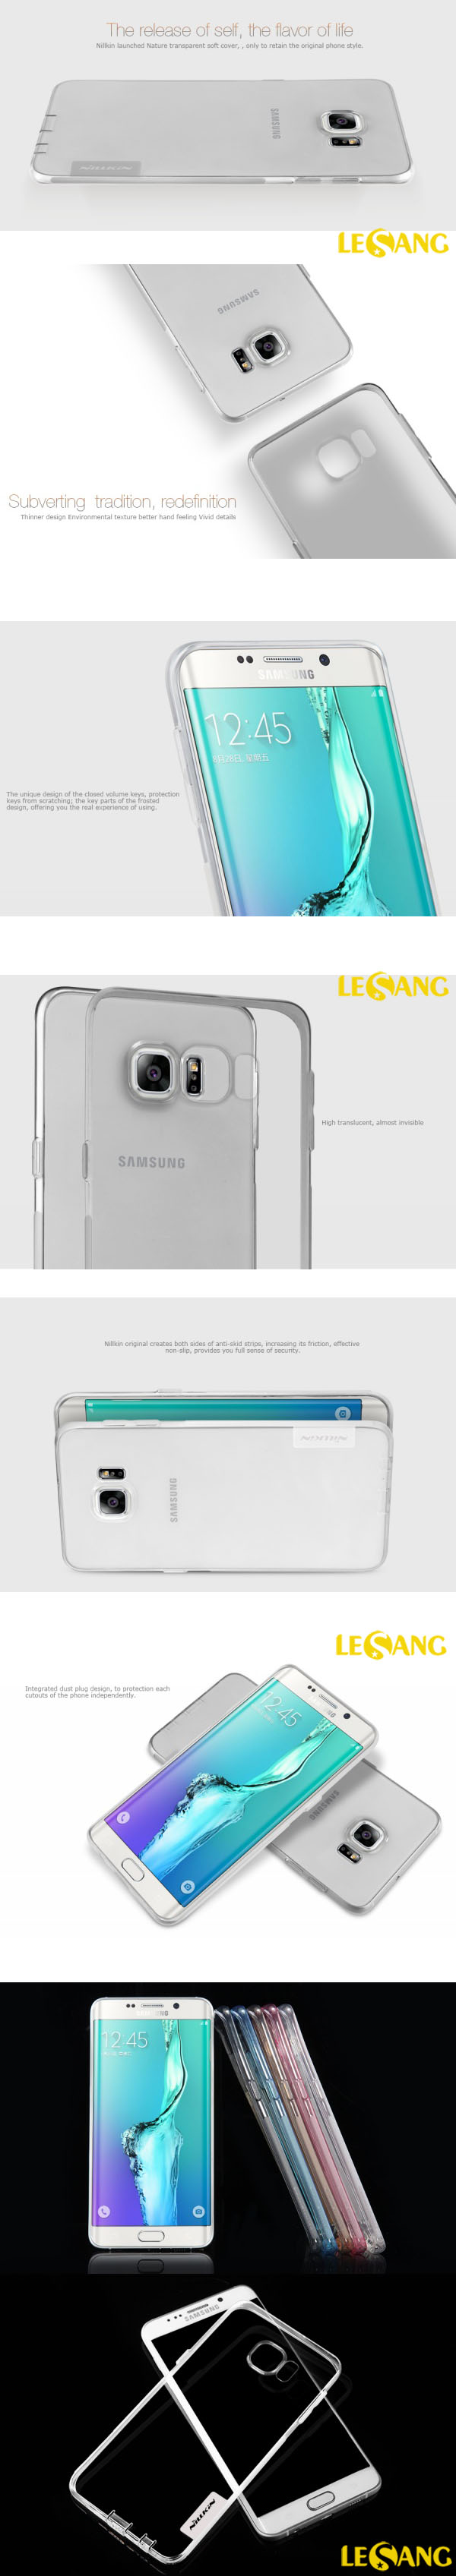 Ốp lưng Galaxy S6 Edge Plus Nillkin nhựa dẻo trong suốt 3